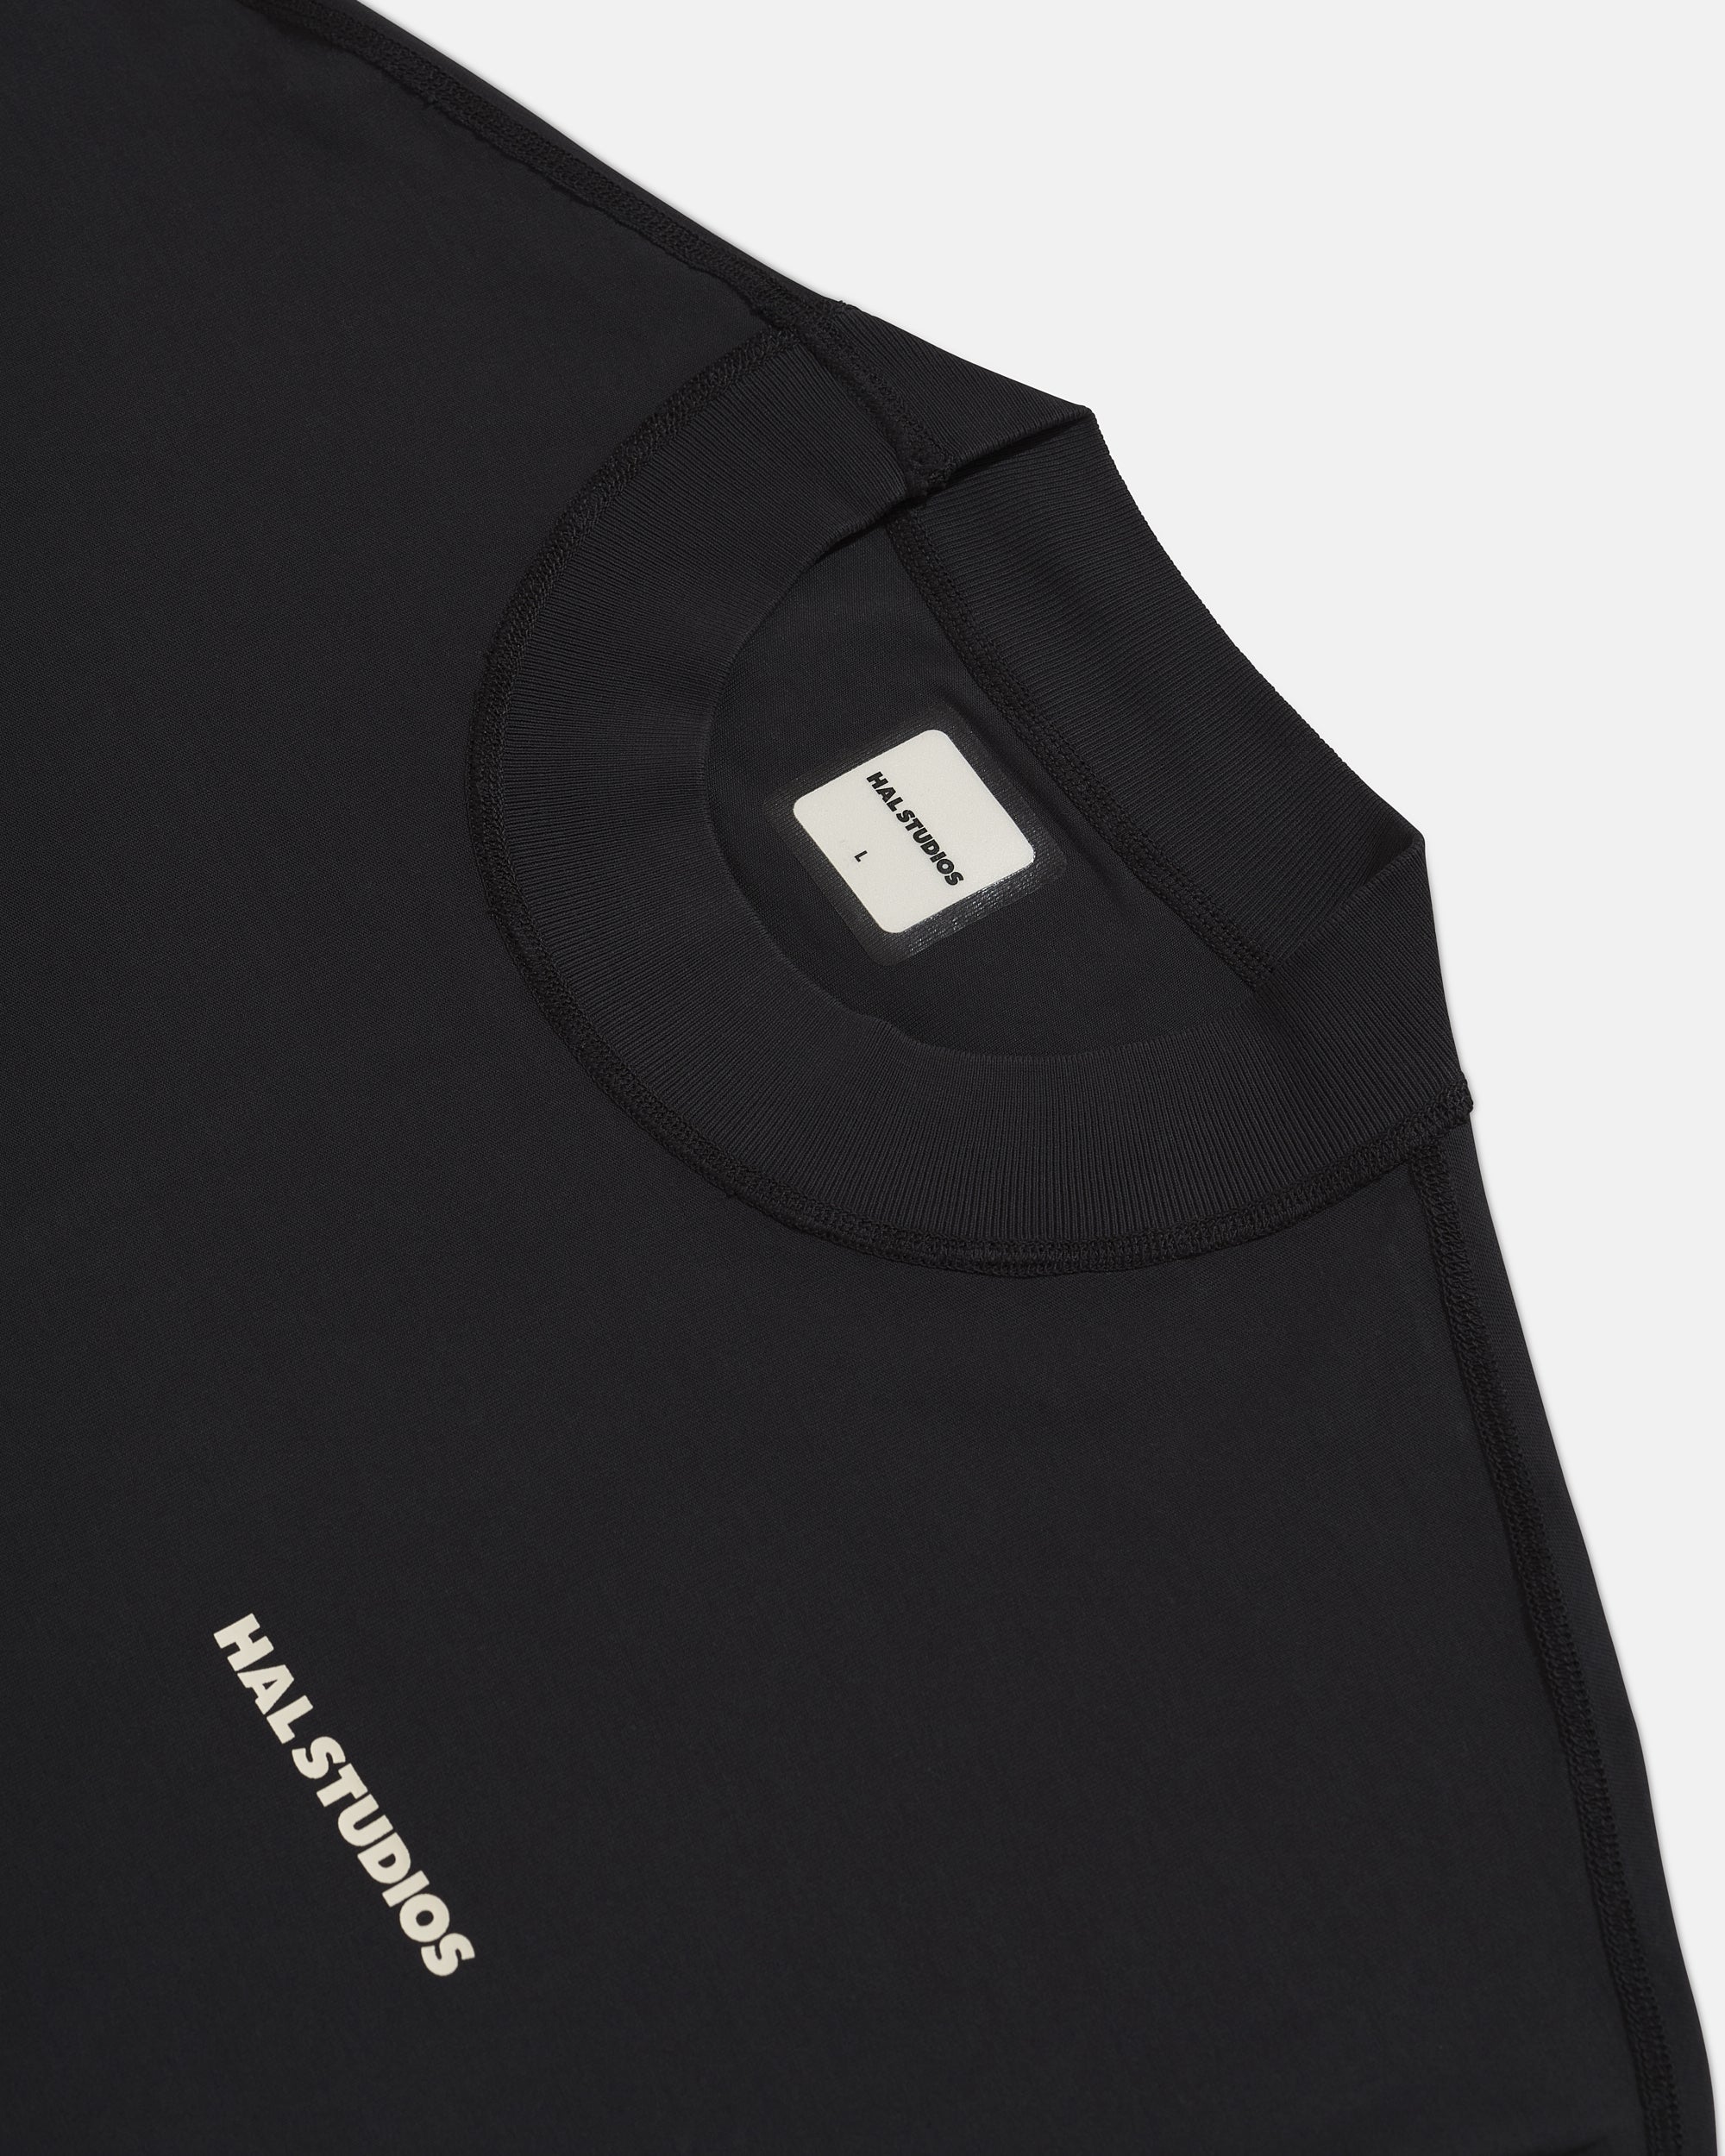 Inside Out Uniform T-Shirt - Black